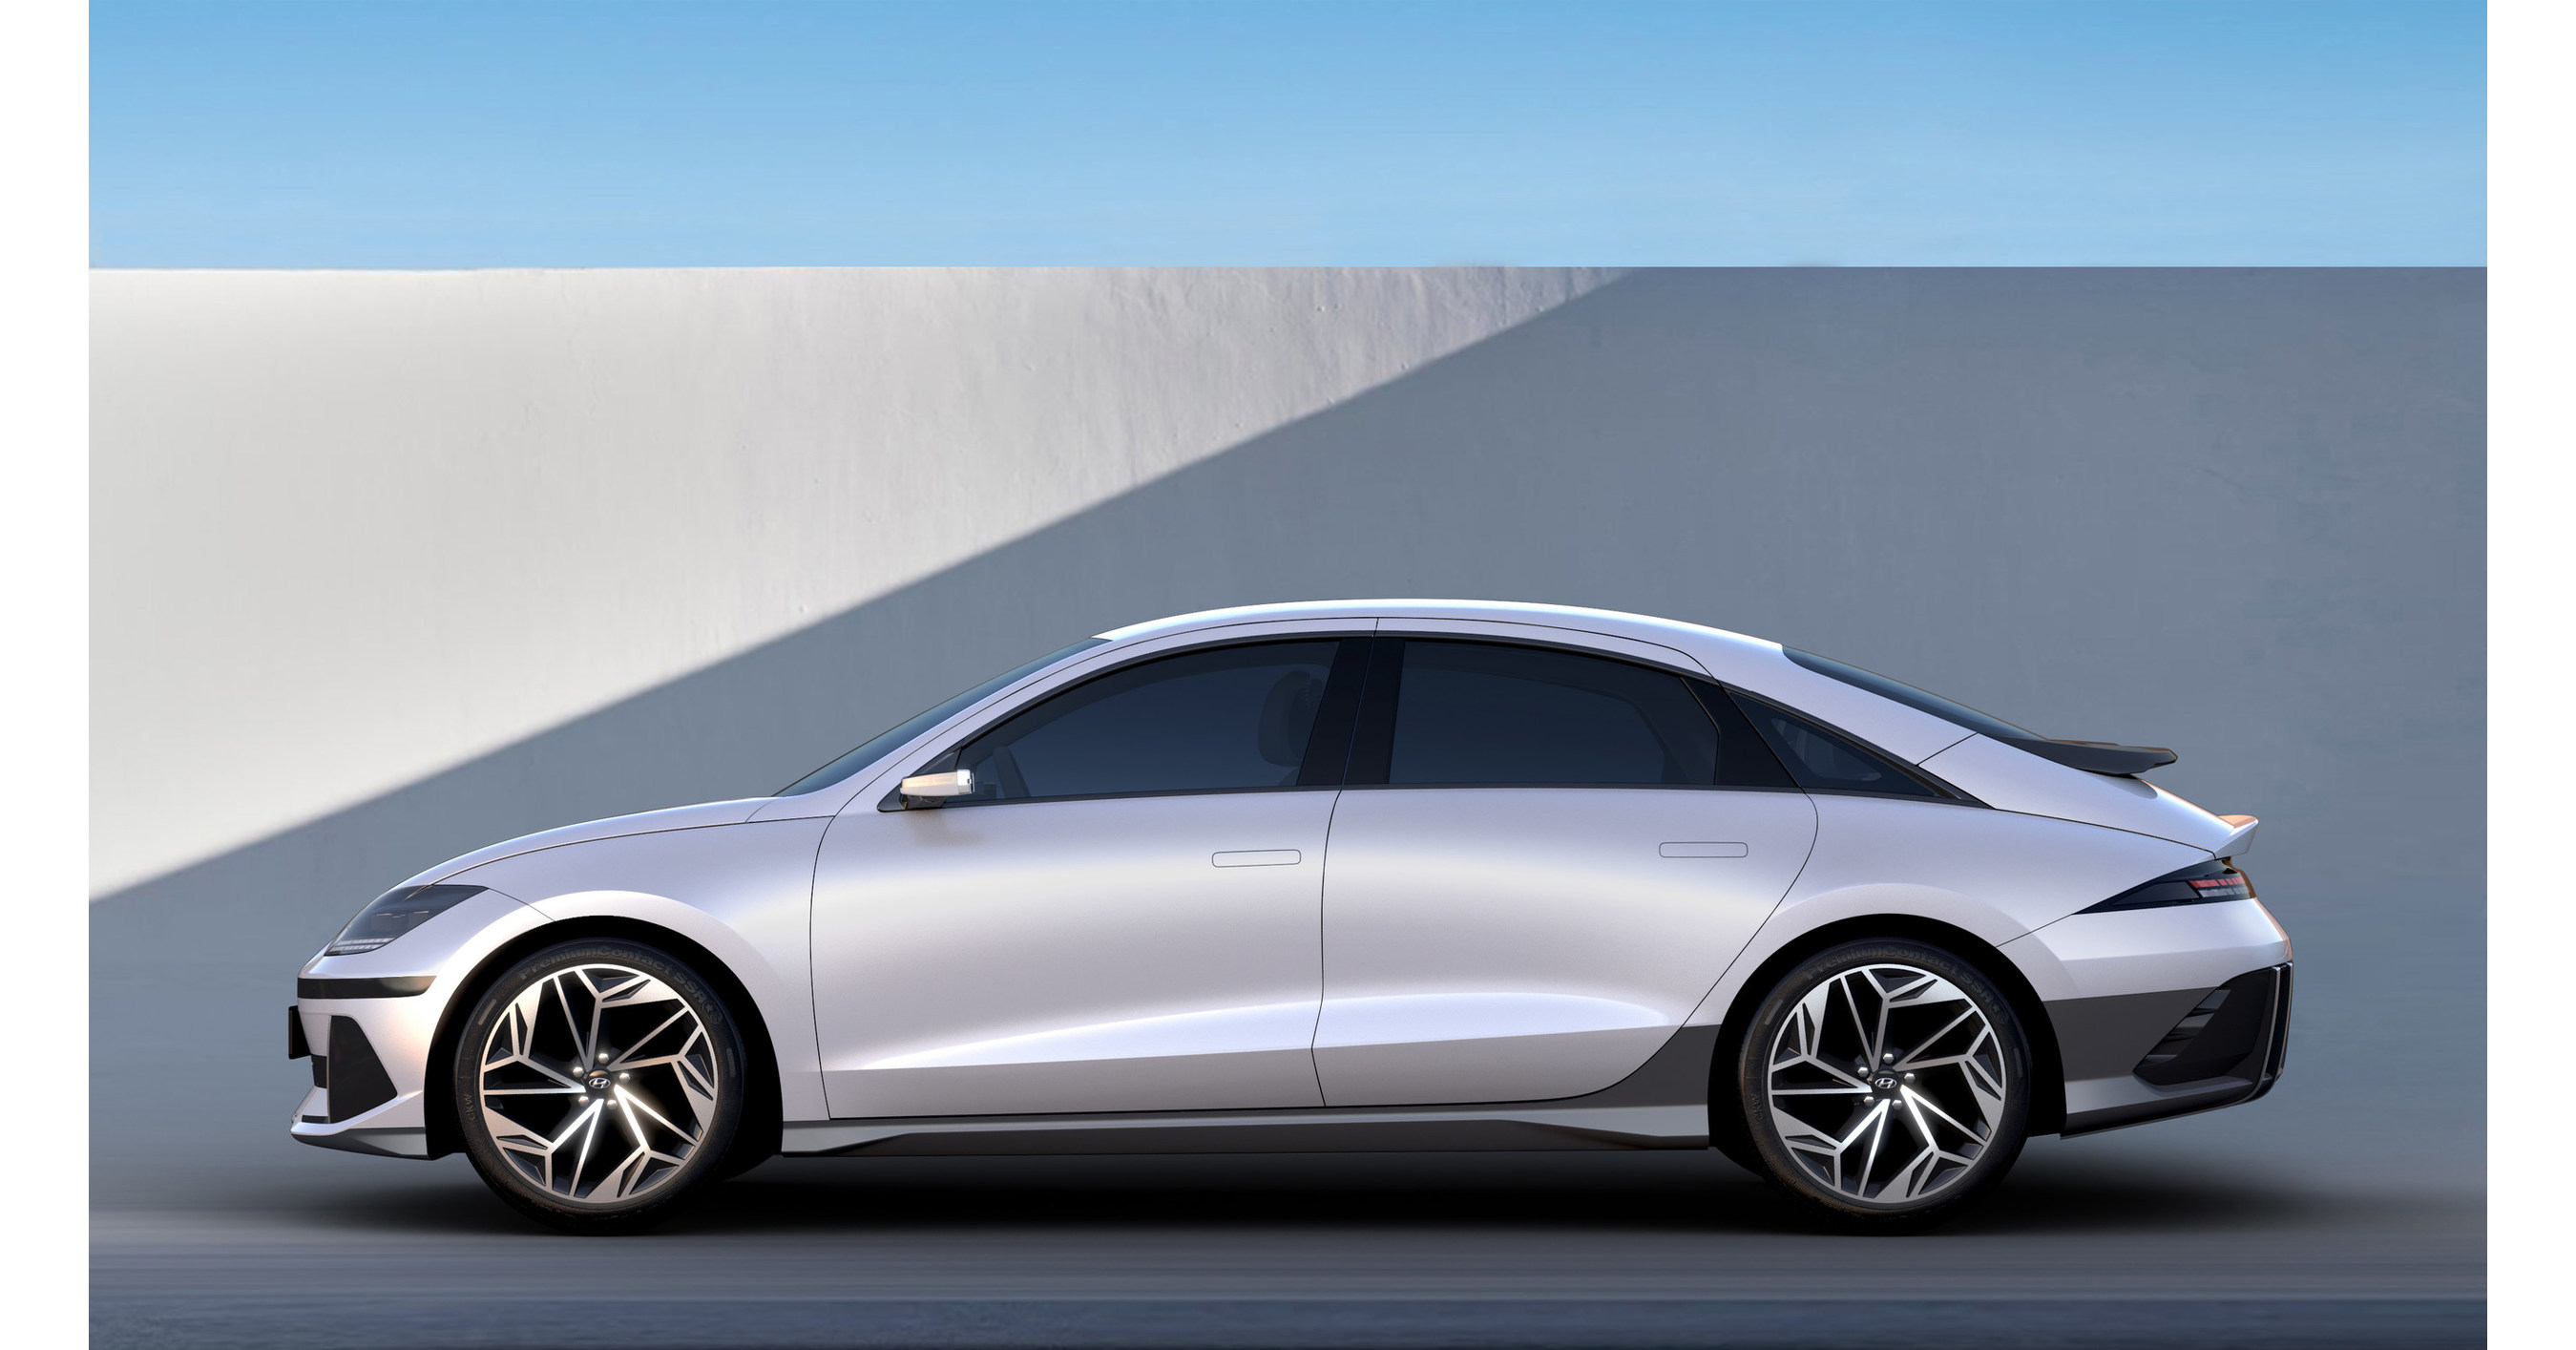 Interior design and technology – Hyundai Ioniq Electric - Just Auto